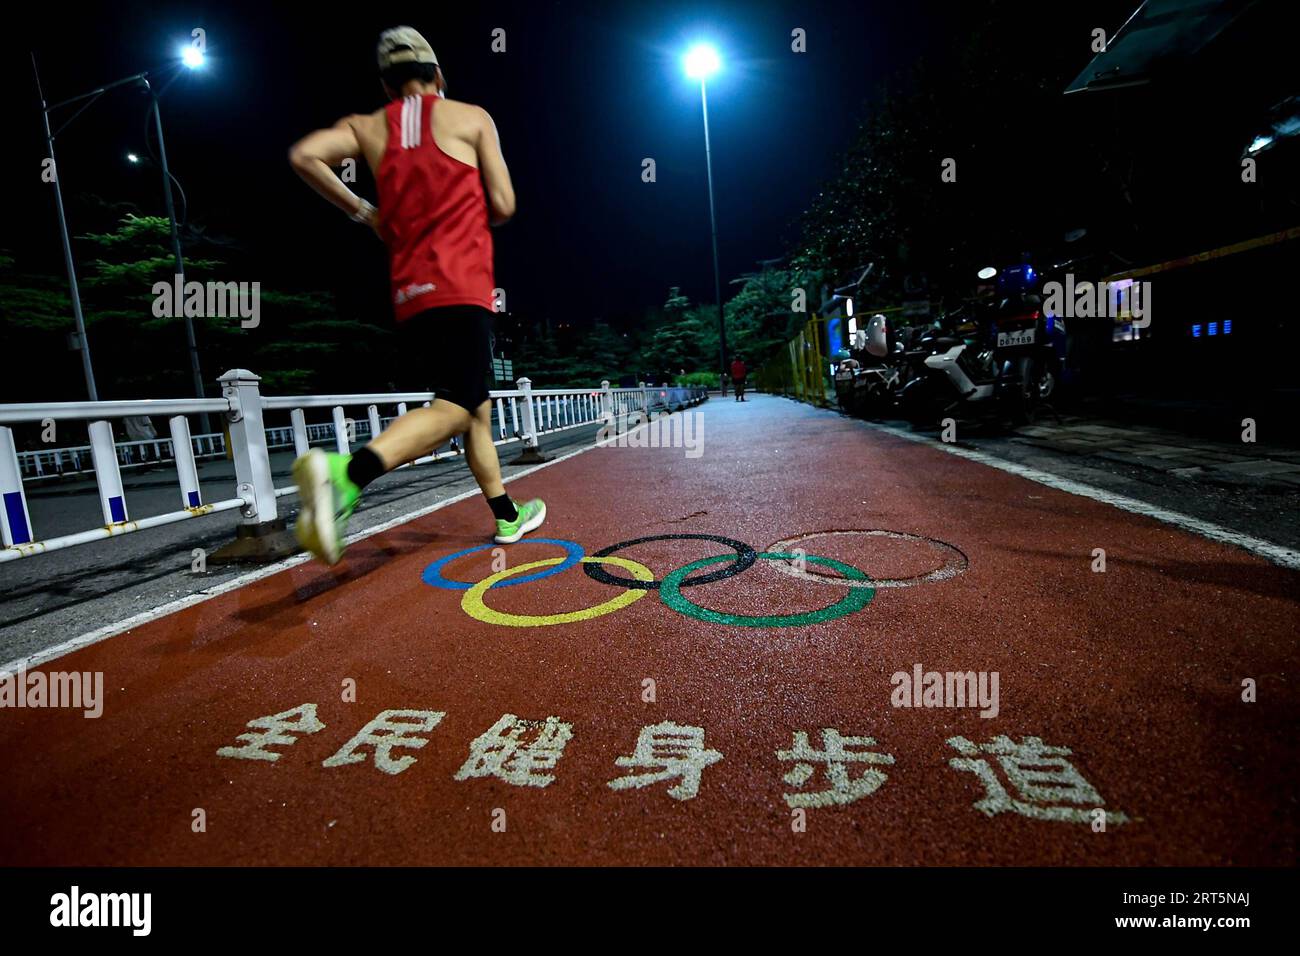 230908 -- PECHINO, 8 settembre 2023 -- Un cittadino corre al National Olympic Sports Center, che è stato inaugurato per i Giochi asiatici di Pechino 1990 a Pechino, capitale della Cina, 20 agosto 2023. Hangzhou diventerà la terza città cinese ad ospitare i Giochi asiatici dopo Pechino nel 1990 e Guangzhou nel 2010. Alcuni impianti sportivi utilizzati o costruiti per i Giochi asiatici di Pechino e Guangzhou sono già stati aperti al pubblico dopo il completamento, il che gioca un ruolo importante nella promozione del fitness di massa e nell'attrarre più persone ad entrare nello sport. SPCHINA-ASIAN GAMES-VENUES-MASS FITNESS CN CHENXZHONGHAO PUBLICATIONXNOTXINX Foto Stock